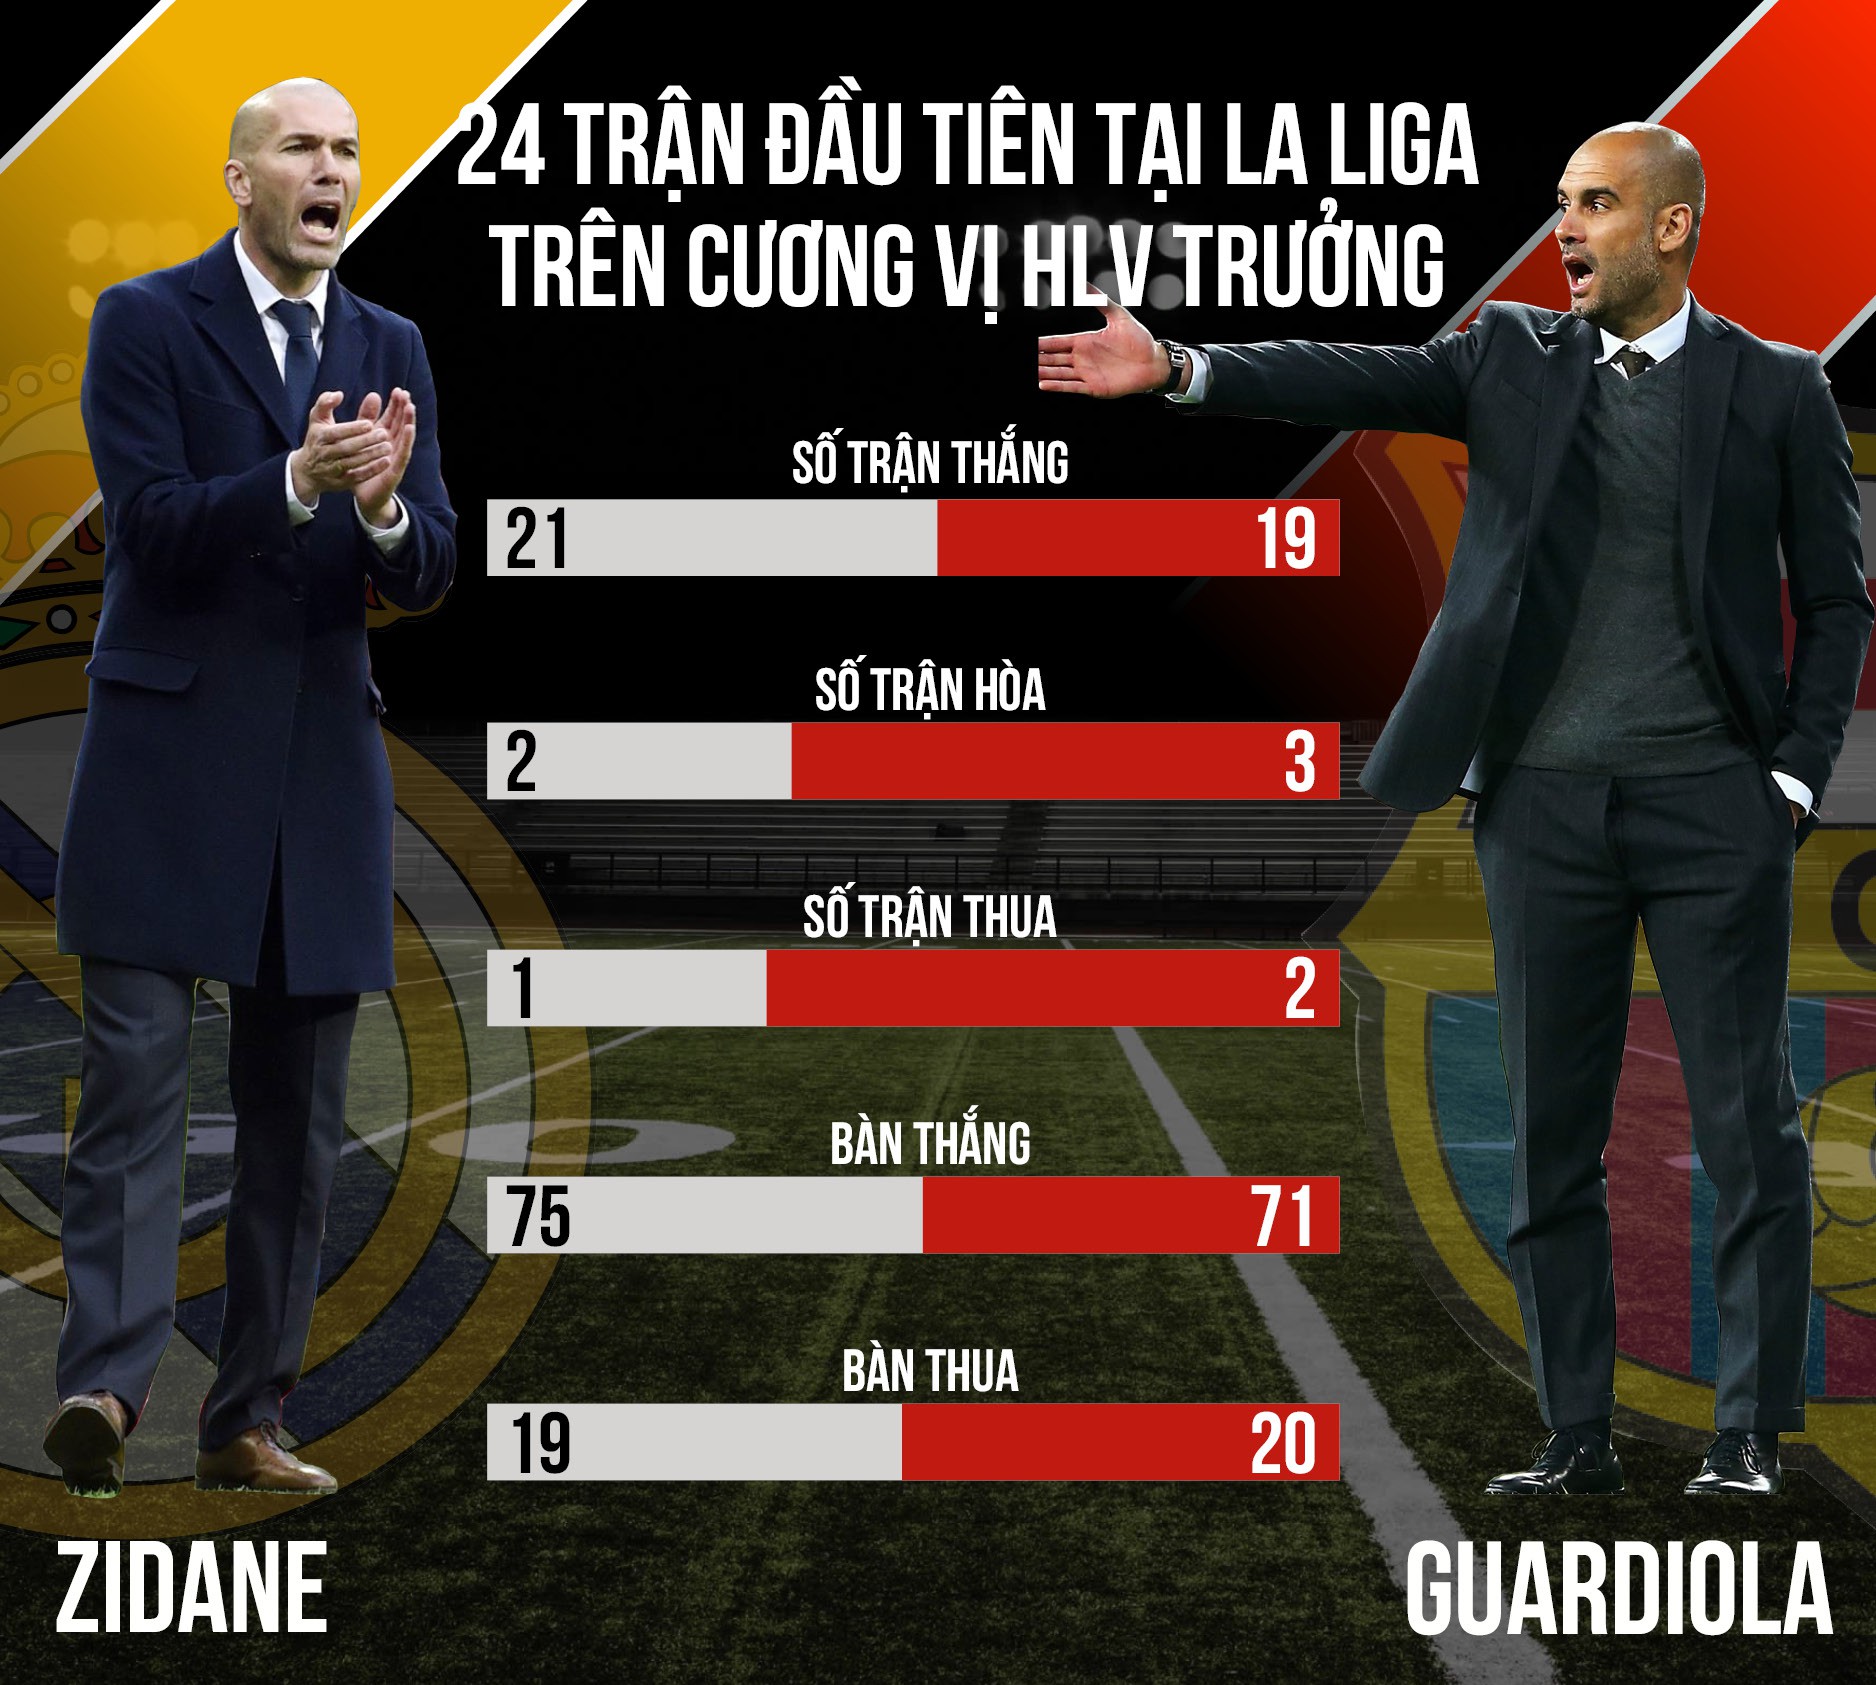 Zidane giỏi hơn Pep Guardiola về khoản ... dạo đầu